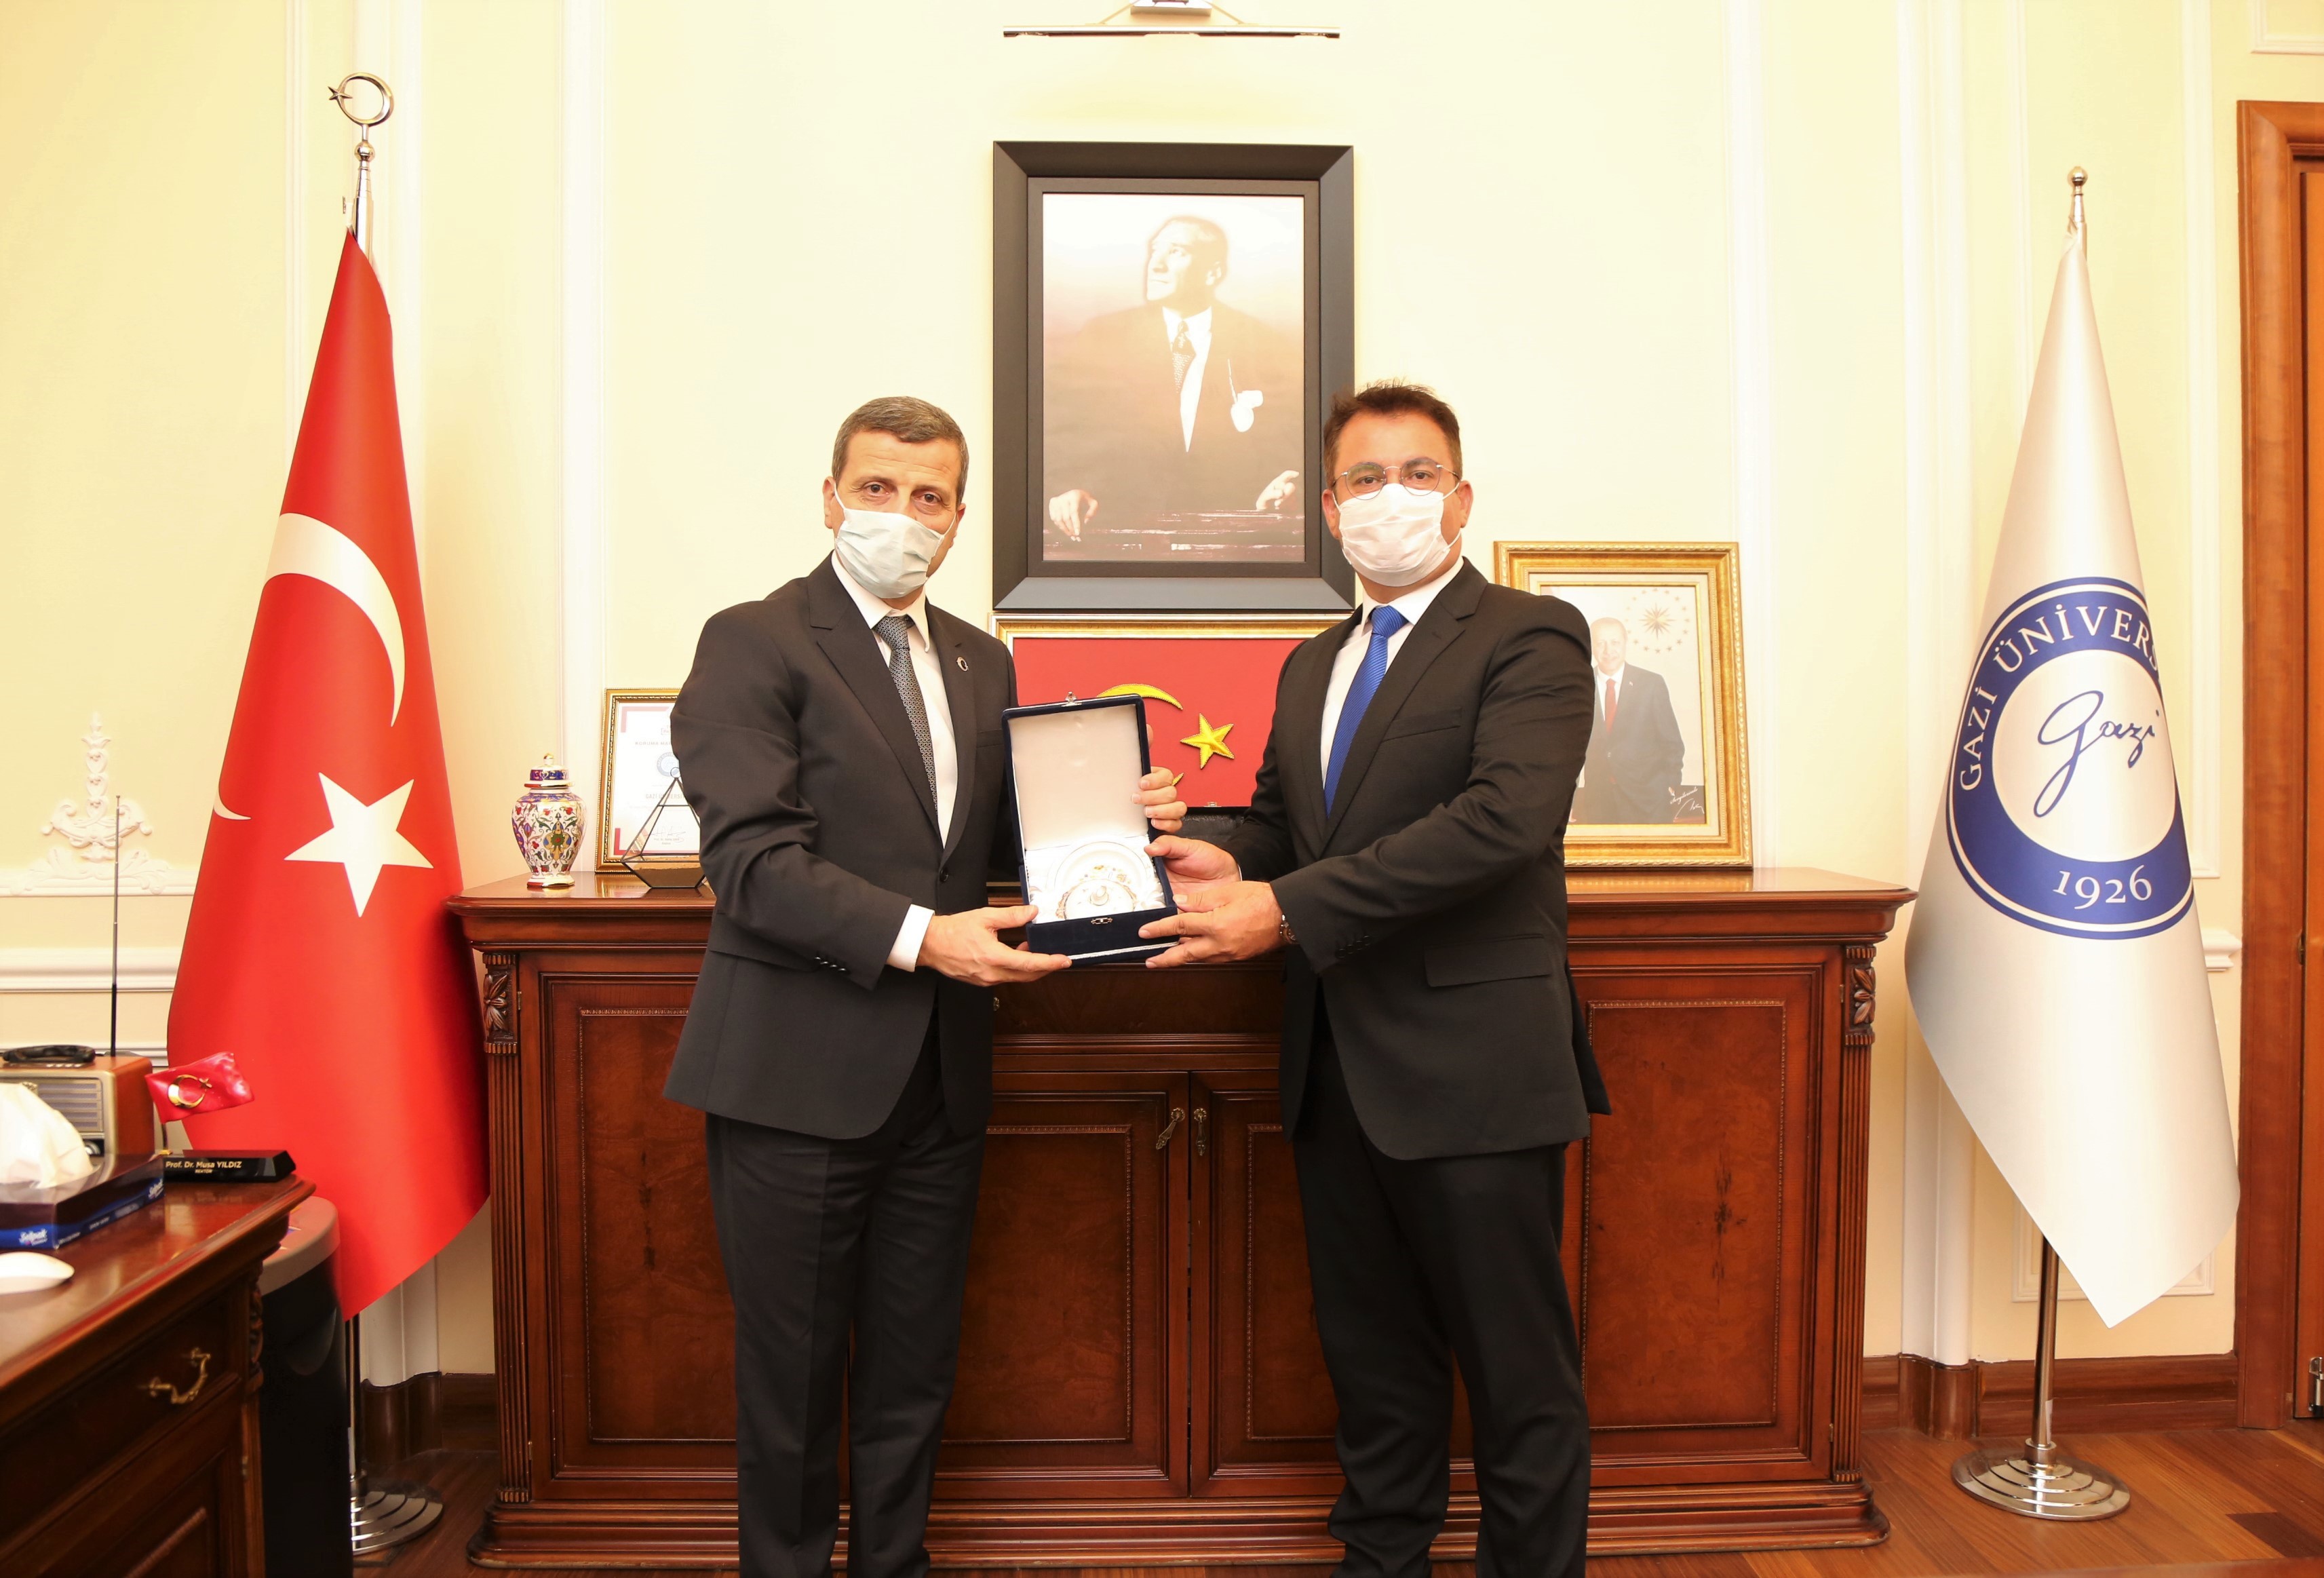 İzmir Yüksek Teknoloji Enstitüsü Rektörü Prof. Dr. Yusuf Baran, Üniversitemiz Rektörü Prof. Dr. Musa Yıldız’ı Makamında Ziyaret Etti